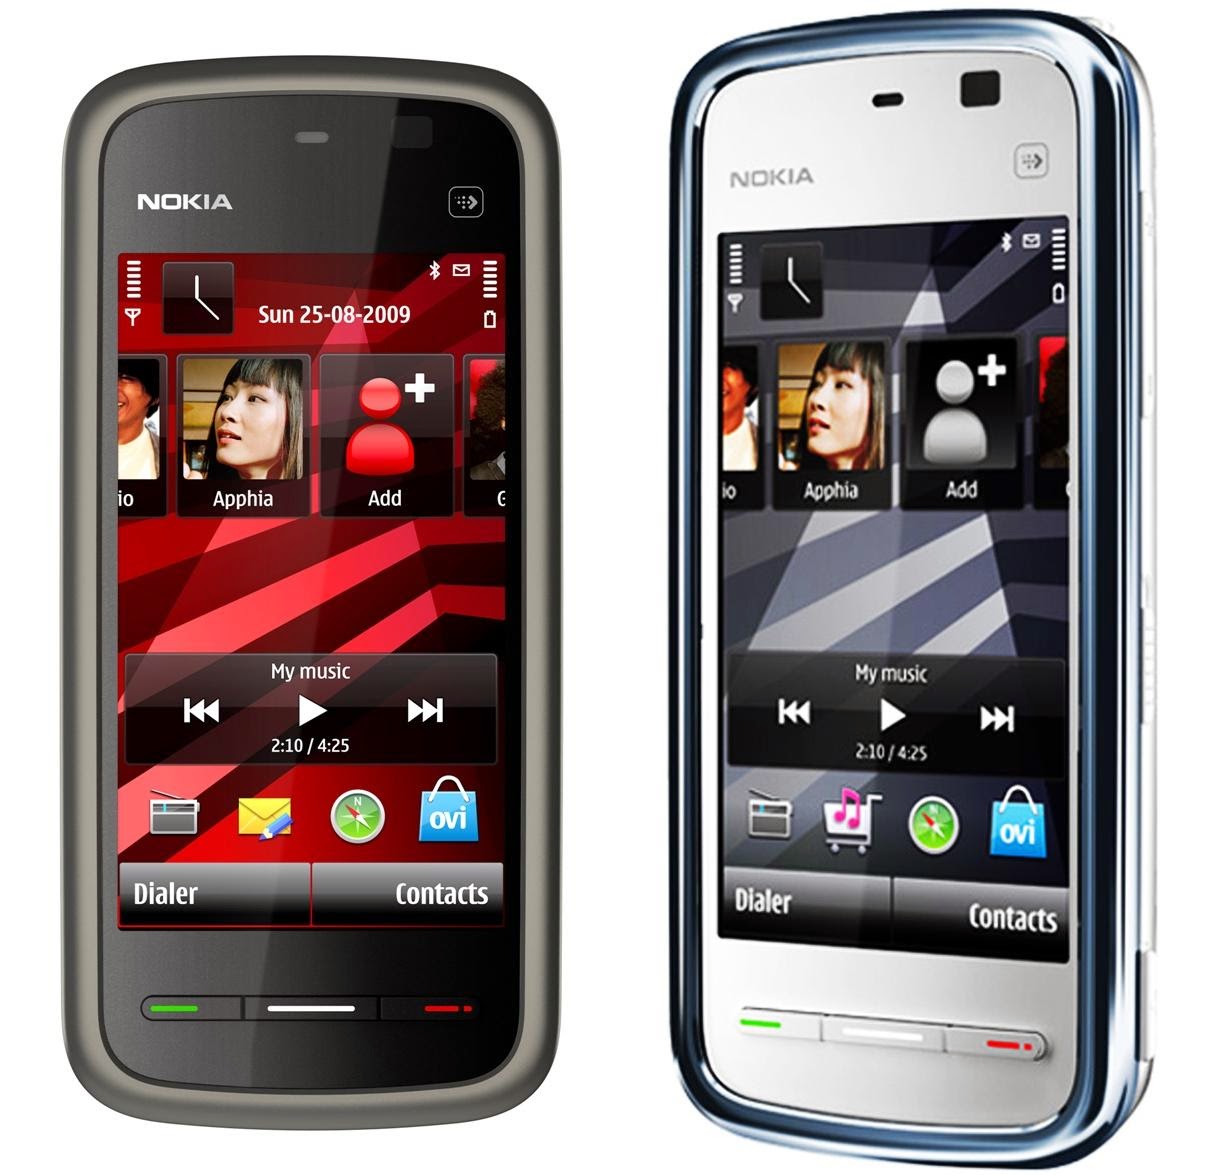 Нокиа сенсорные модели. Nokia 5233. Nokia сенсорный 5233. Nokia сенсорный 5230. Нокиа с700 сенсорный.